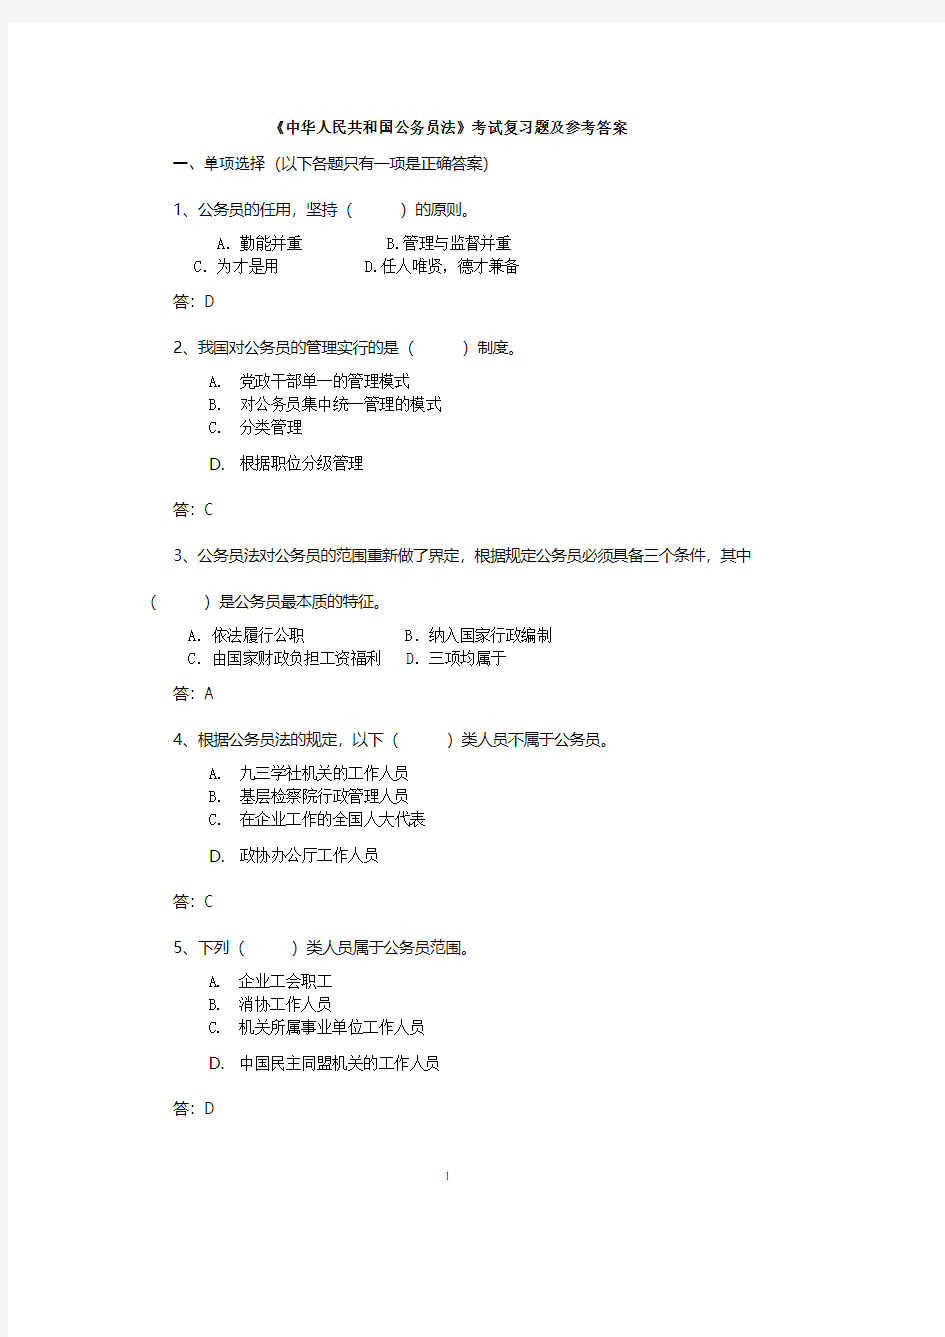 中华人民共和国公务员法试题及参考答案(2020年整理).pdf